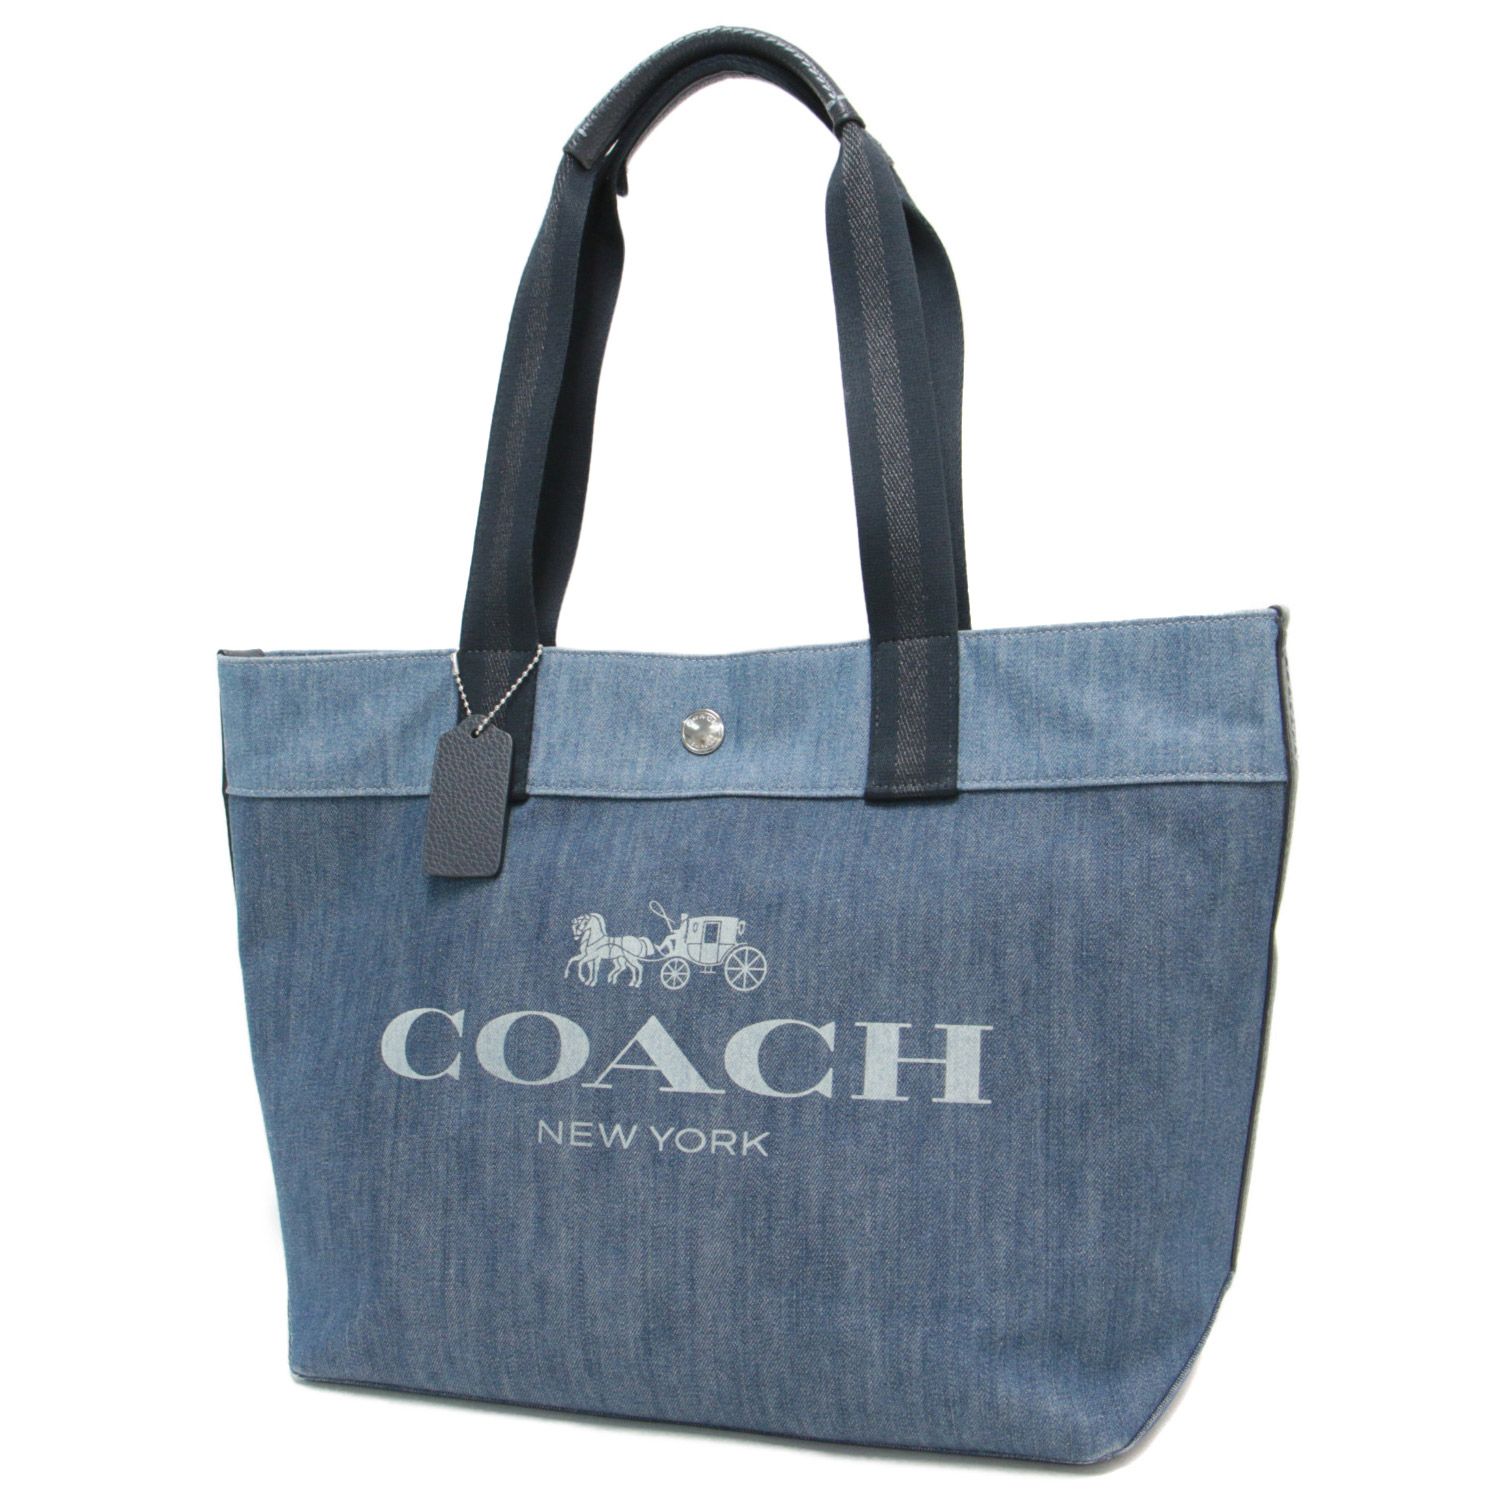 COACH コーチ バッグ トート カバン 鞄 ブルー 肩掛け ロゴ